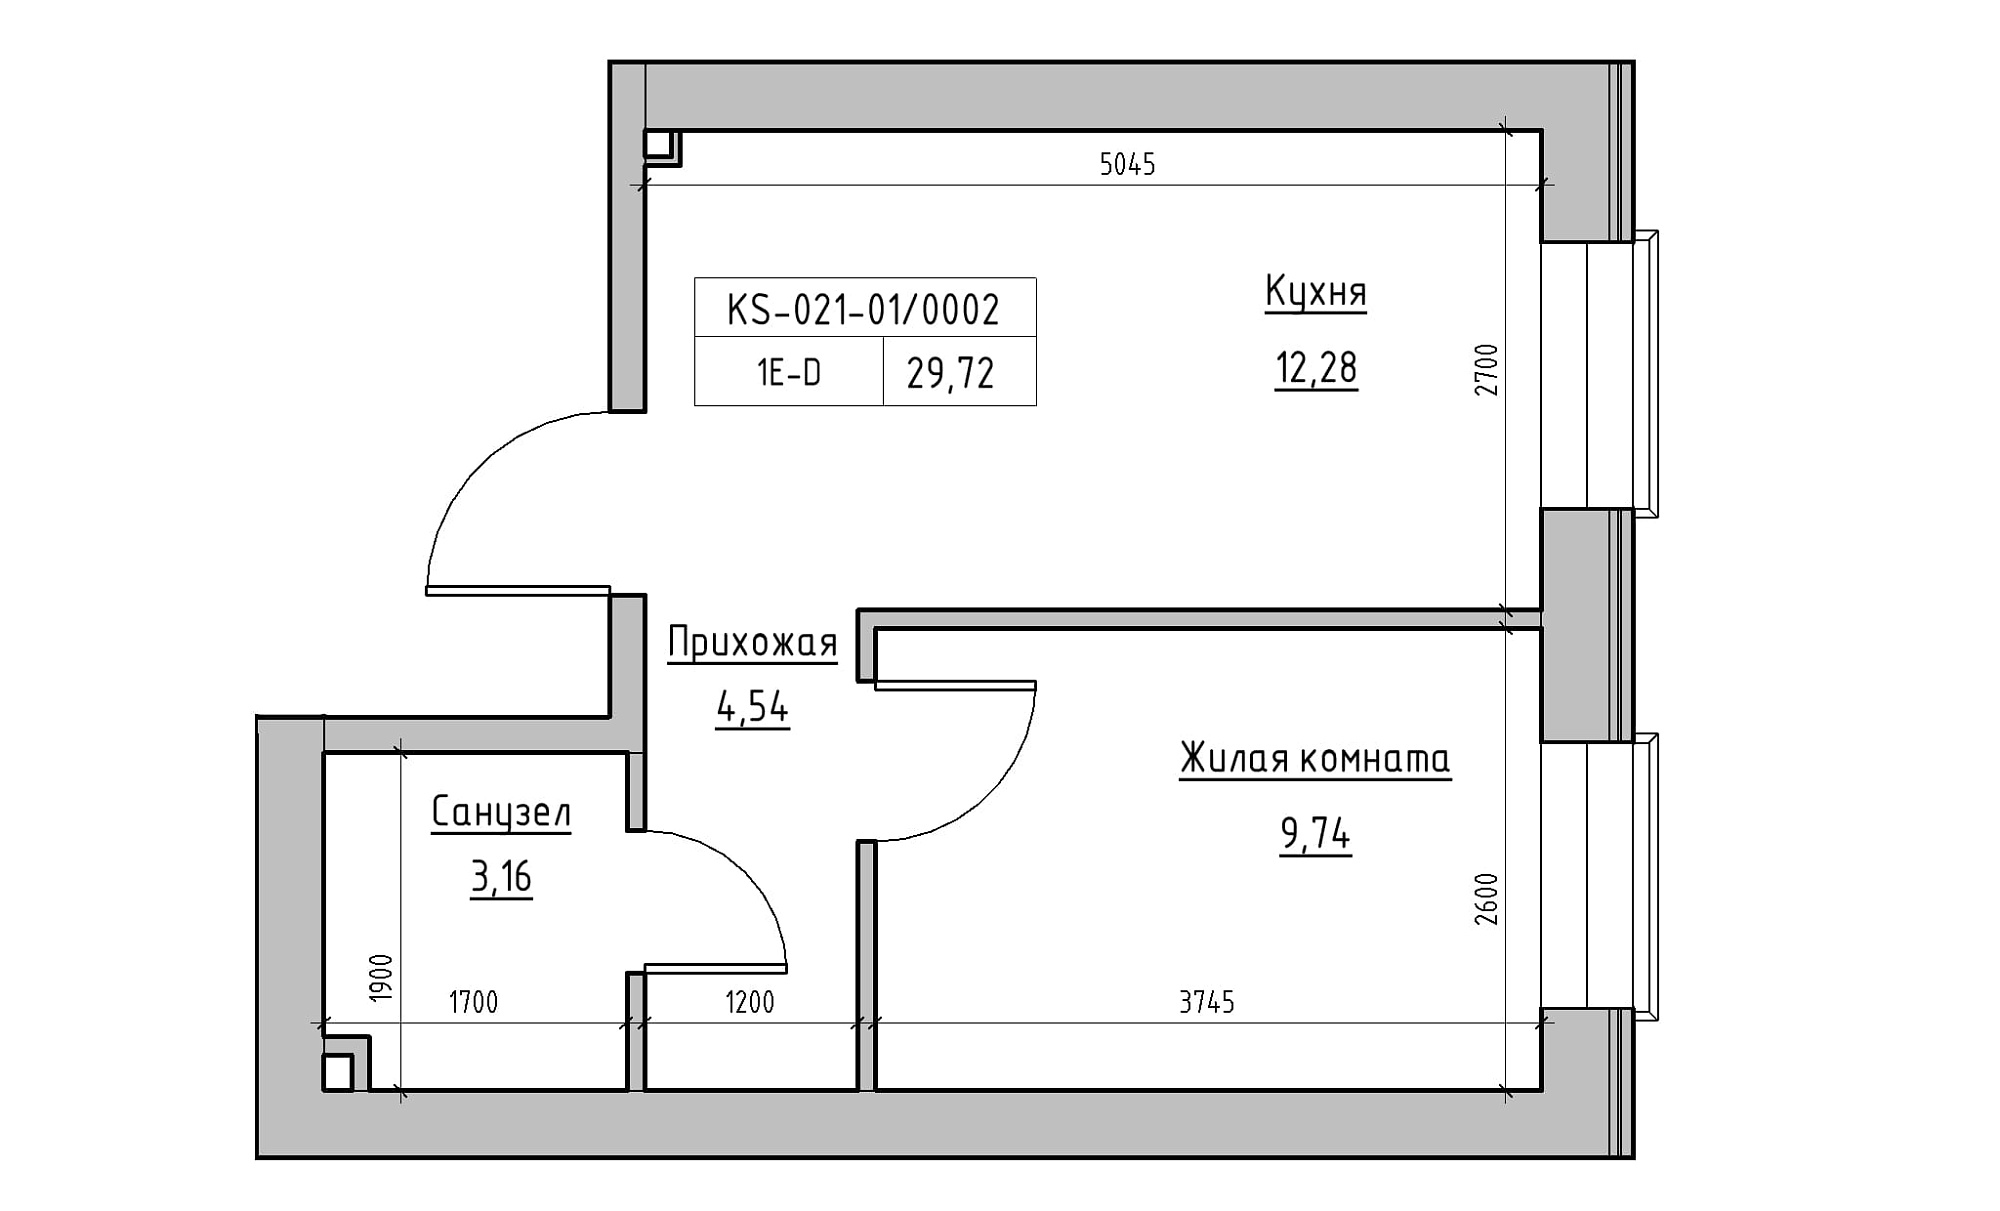 Планировка 1-к квартира площей 29.72м2, KS-021-01/0002.